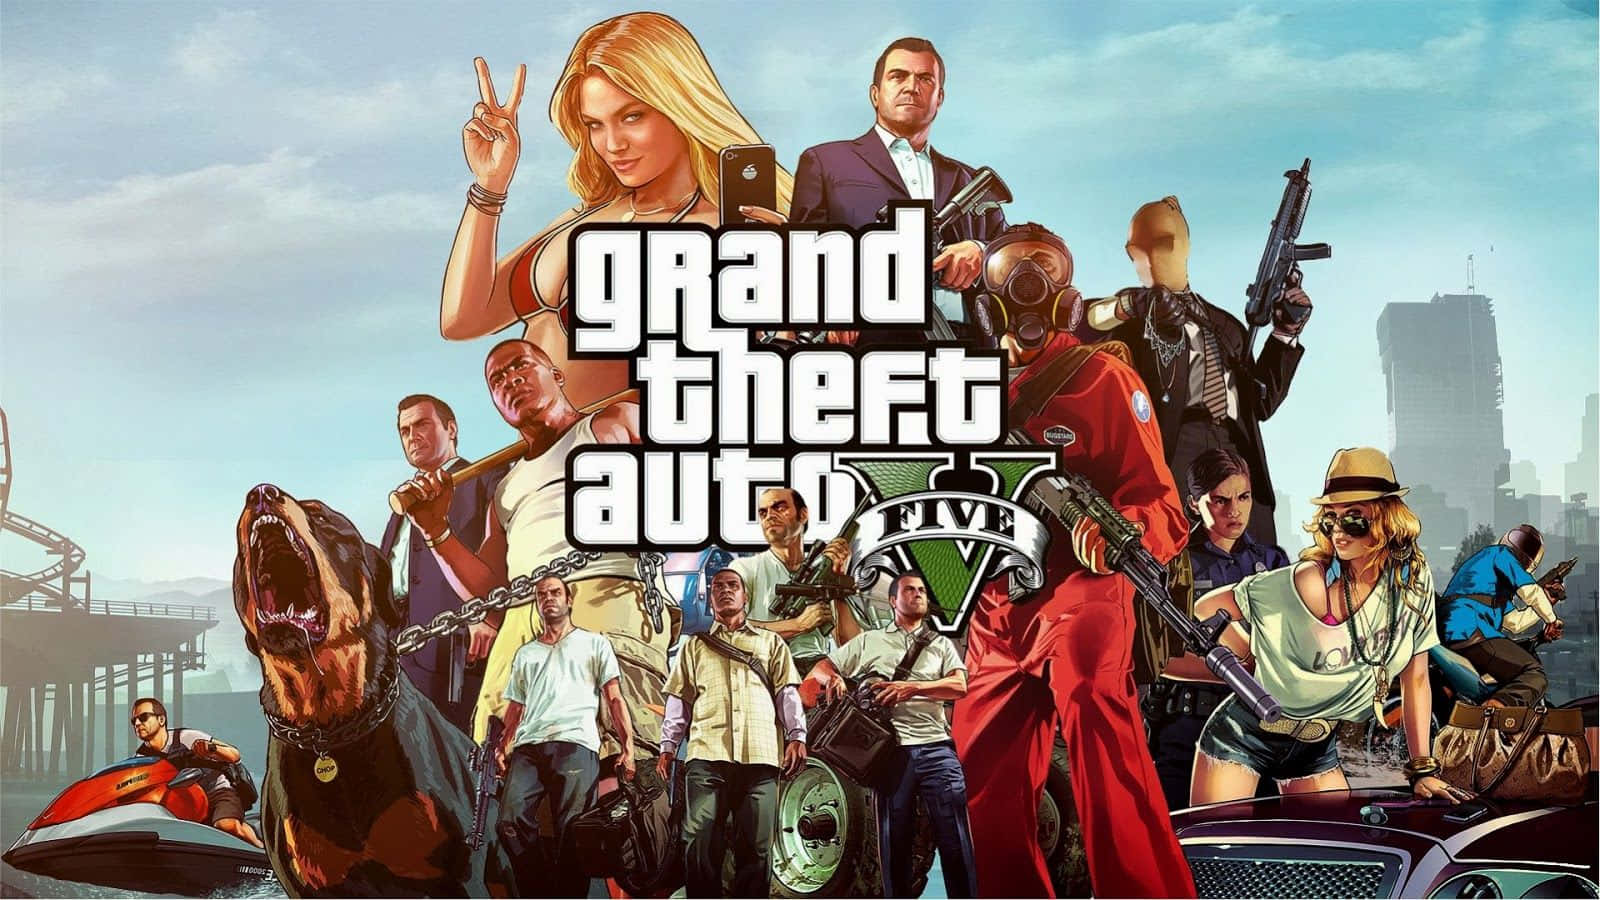 Grand Theft Auto Online-spillere løber biler i fantastiske ørkener og bjerge. Wallpaper